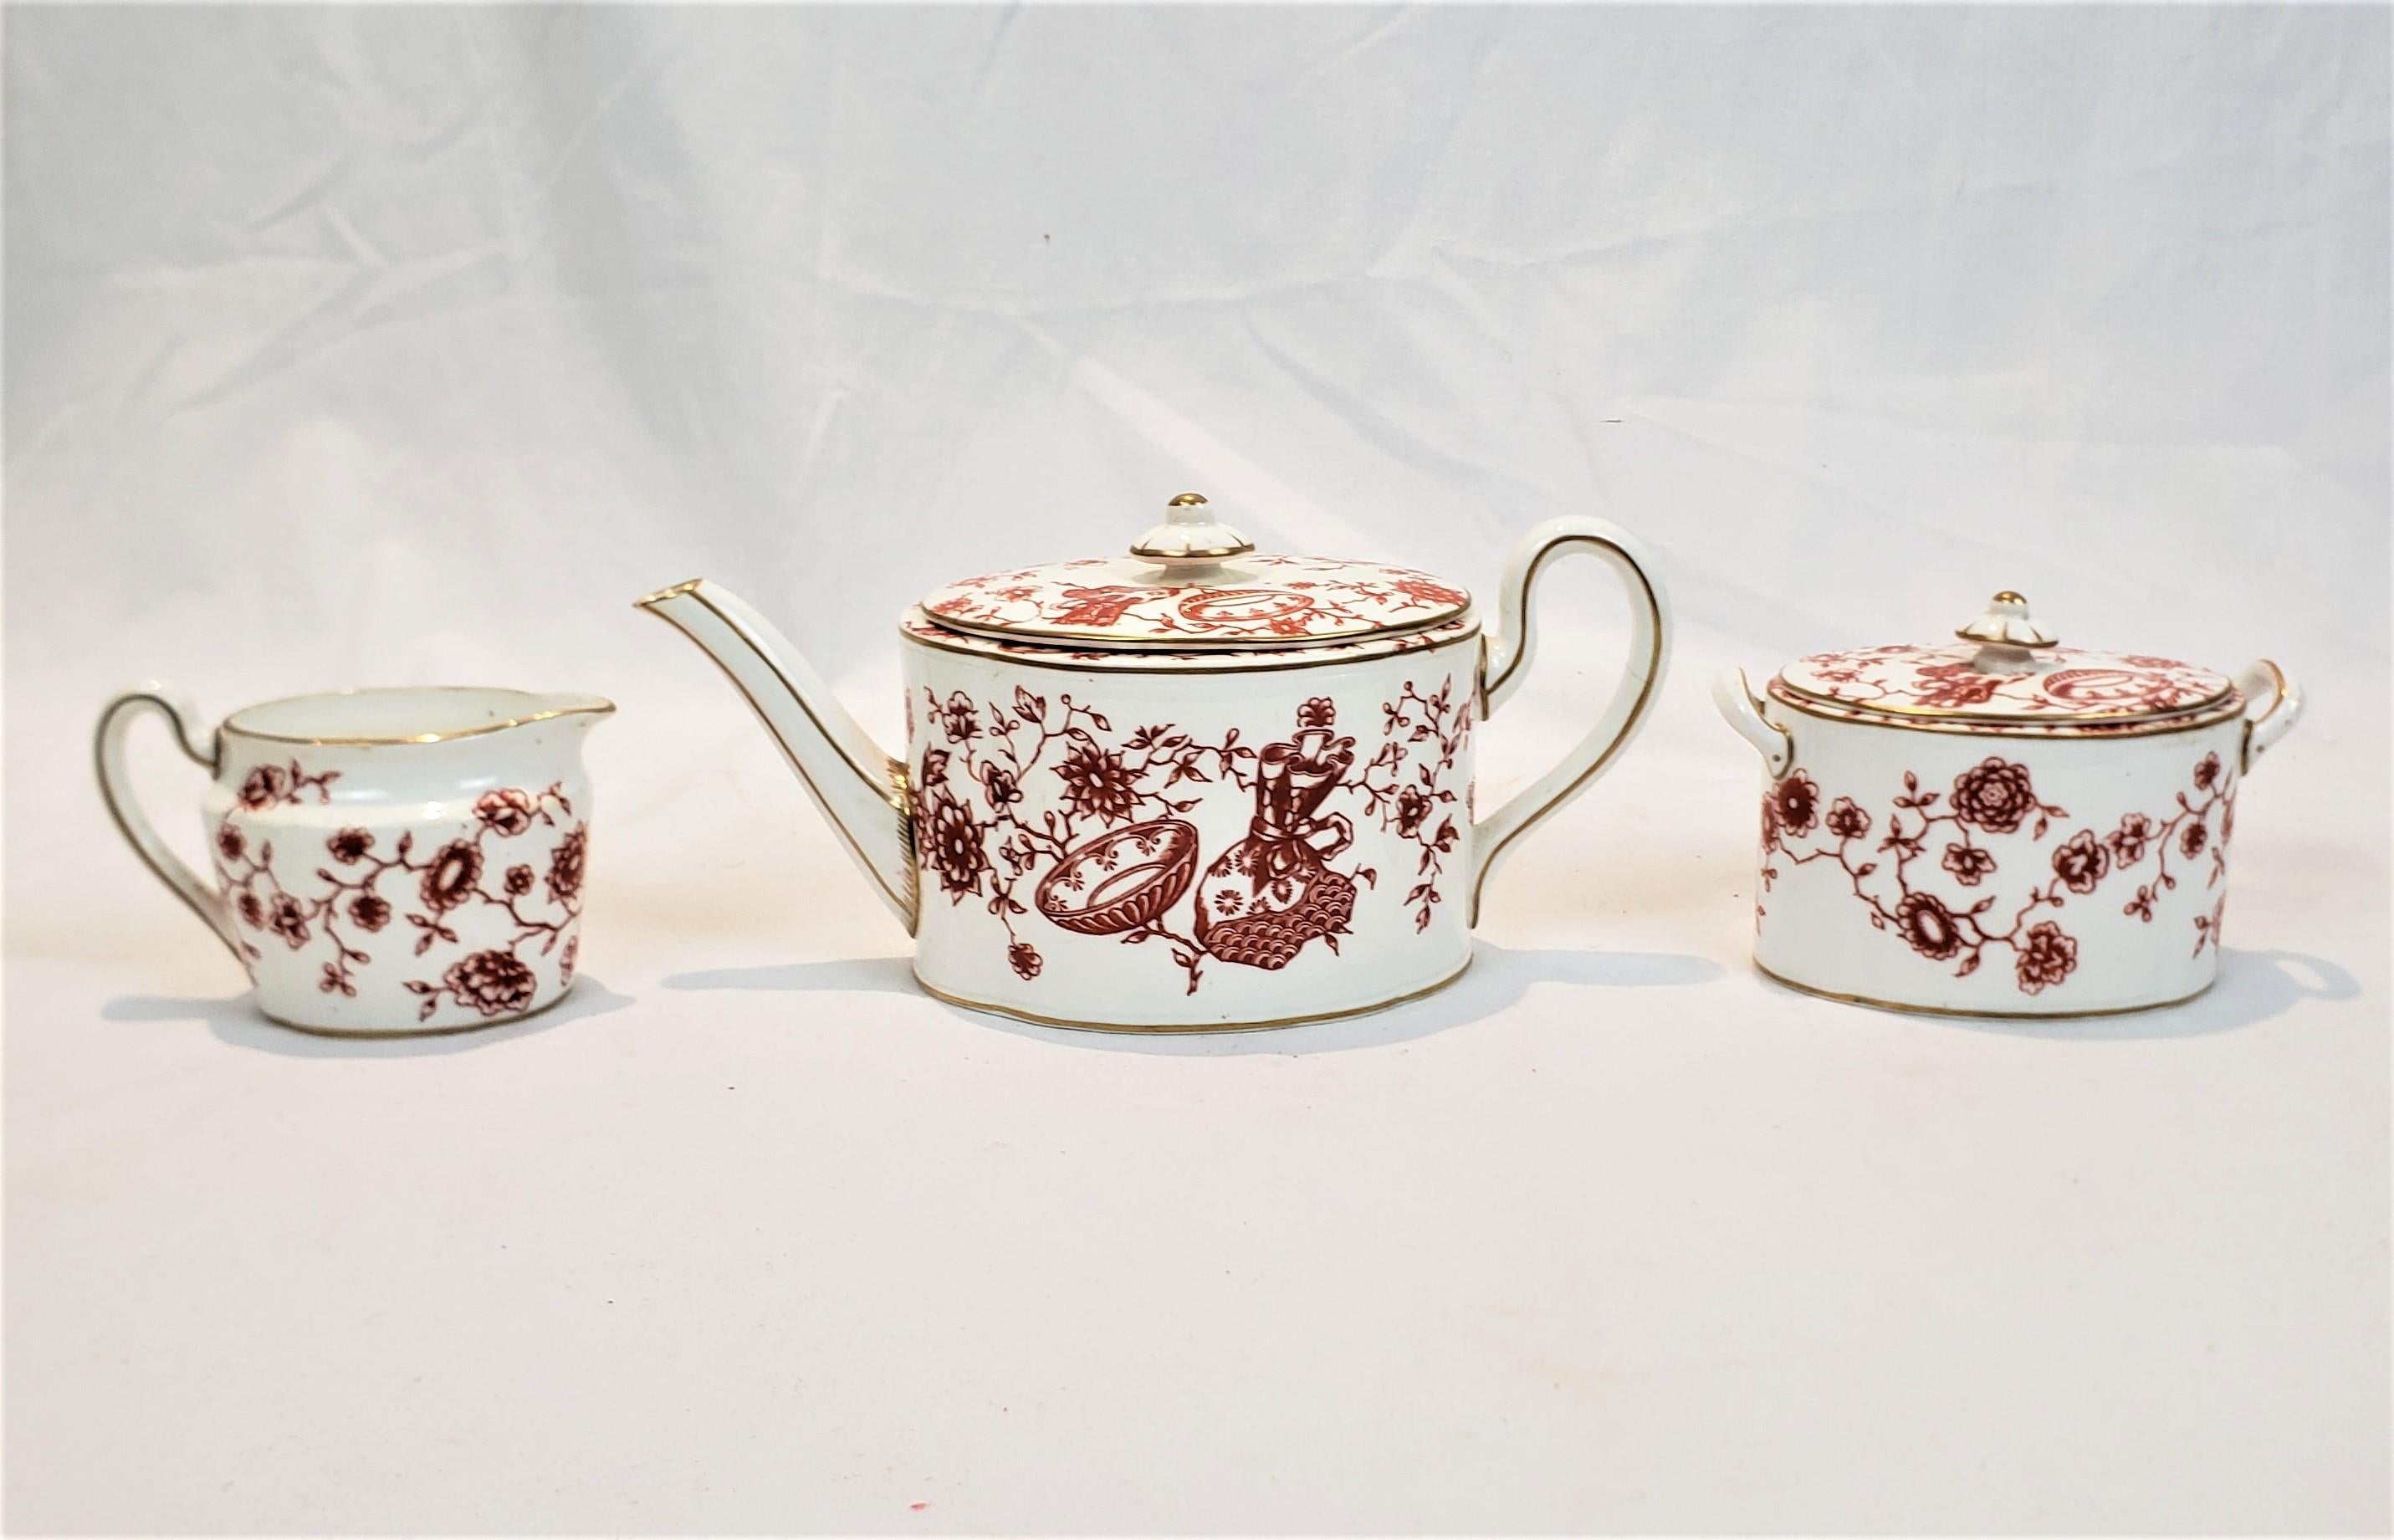 Diese Teekanne und das Set aus Sahne und Zucker wurden von der bekannten englischen Manufaktur Royal Crown Derby hergestellt. Sie stammen aus der Zeit um 1850 und sind im Stil der Chinoiserie gehalten. Das Set besteht aus Porzellan mit einer